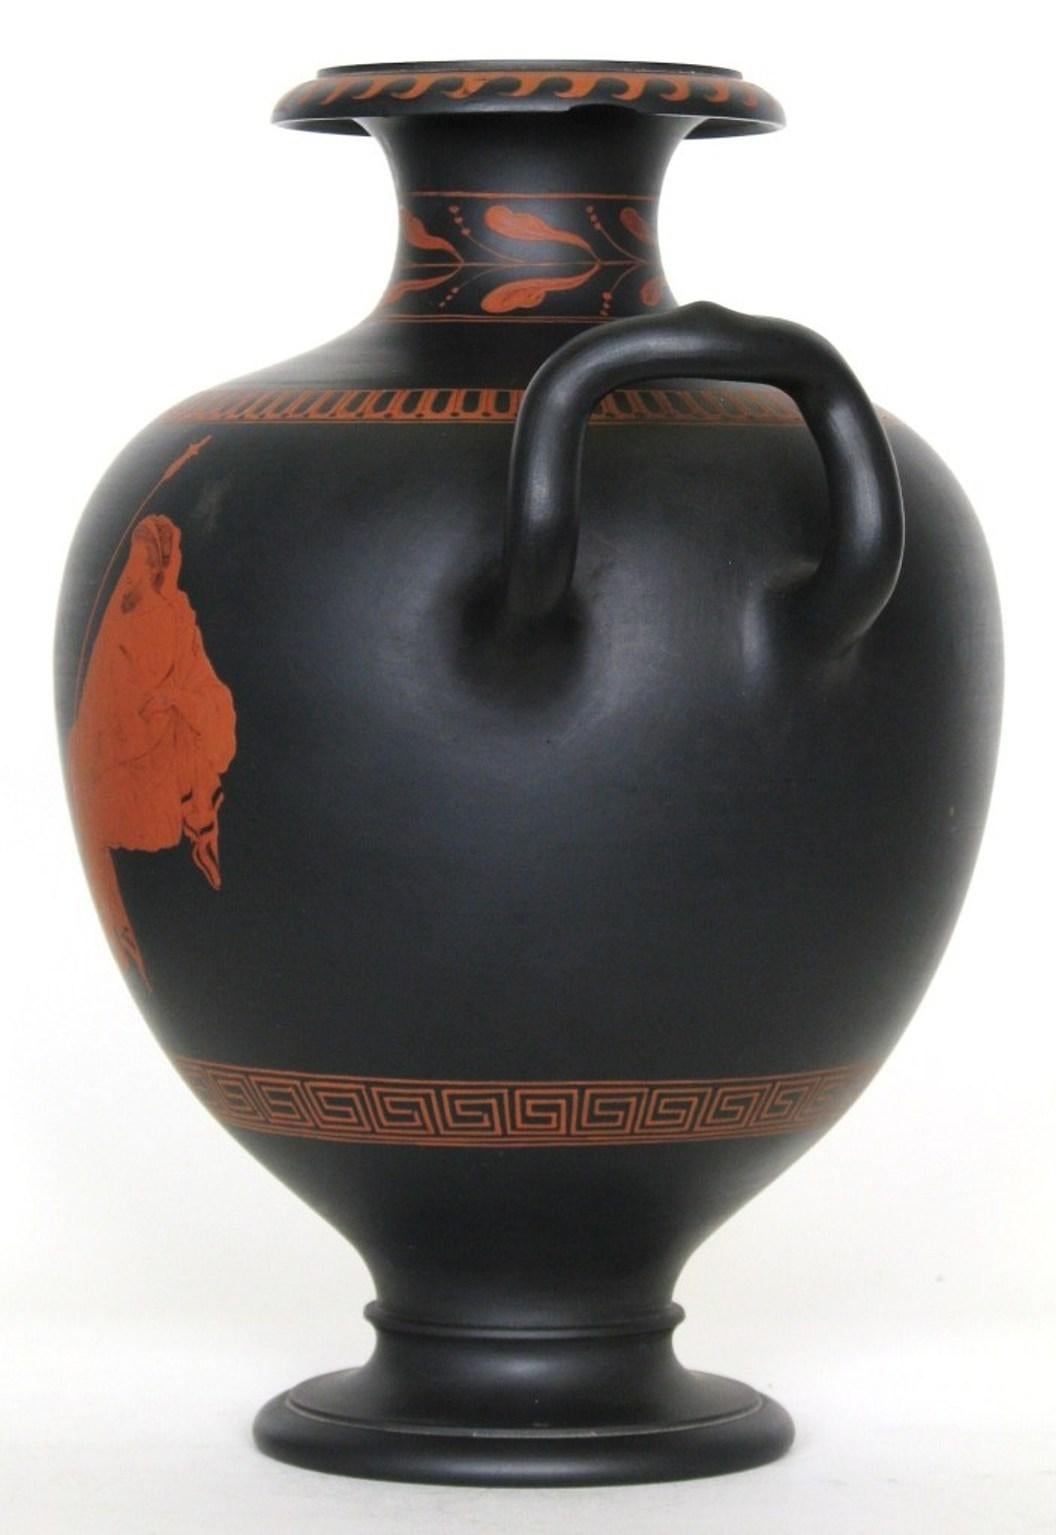 Un grand vase en basalte noir, décoré d'une figure peinte à l'encaustique représentant un jeune homme et un homme plus âgé, provenant du vase Hamilton du British Museum. Il est rare de trouver un exemplaire fabriqué et cuit d'un seul tenant, signe